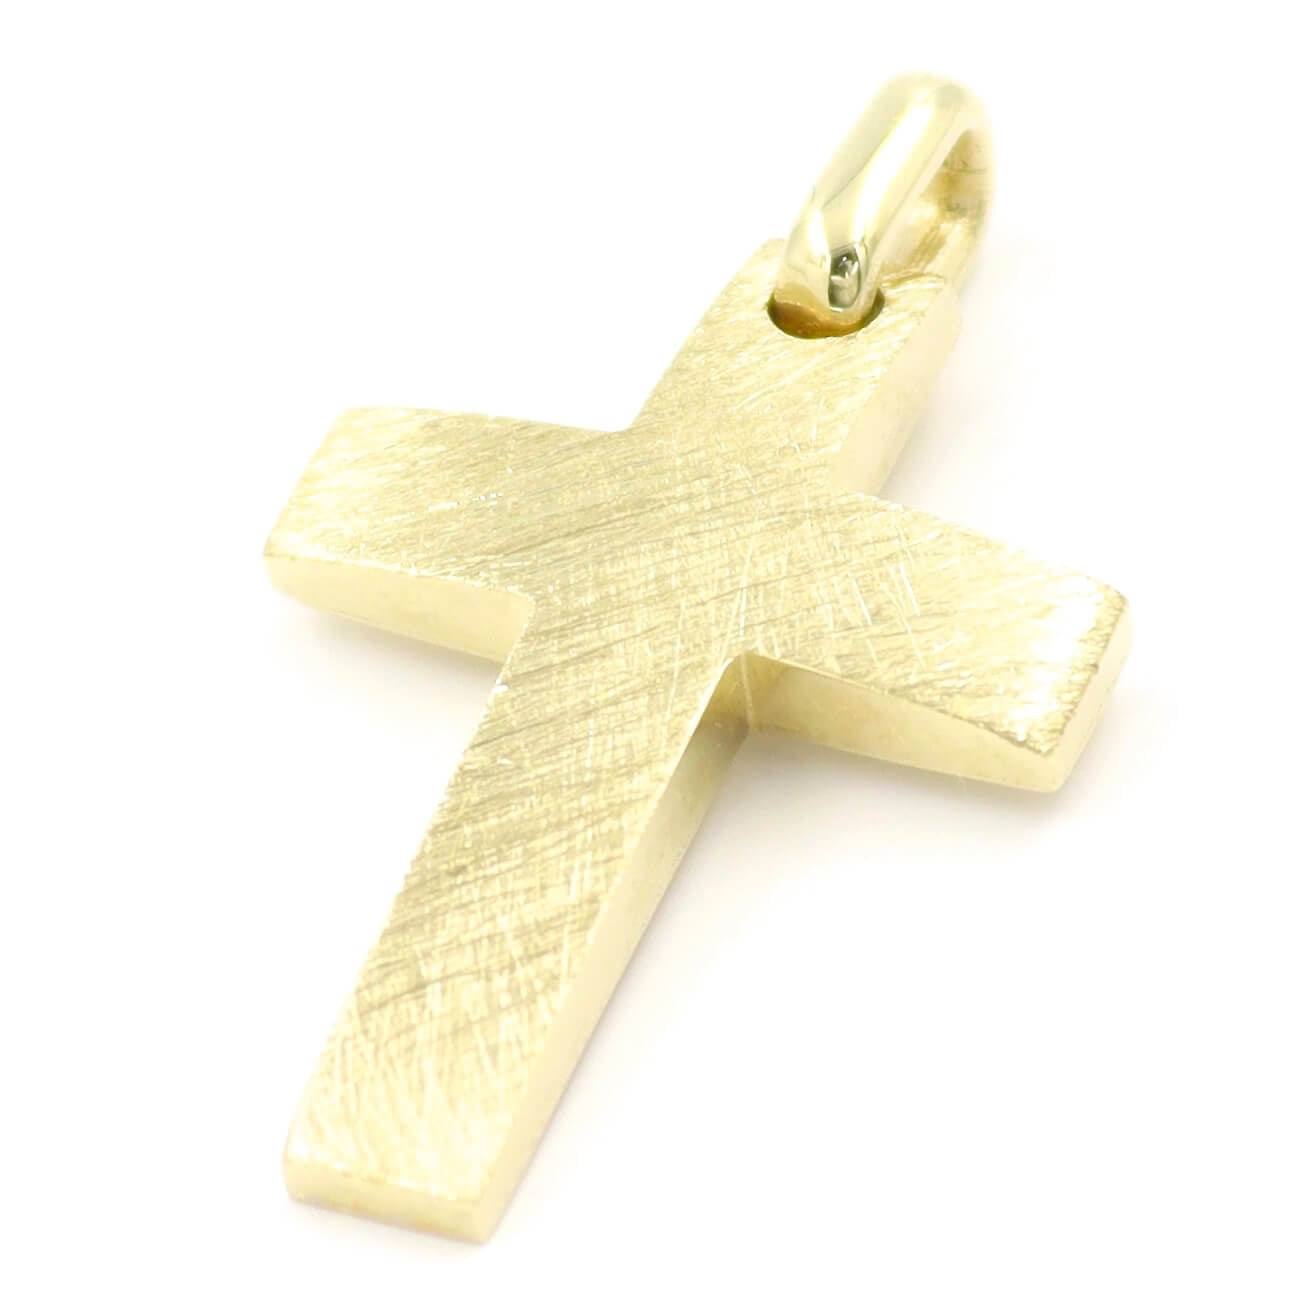 Σταυρός με σαγρέ επιφάνεια από κίτρινο χρυσό 14 καρατίων για βάπτιση